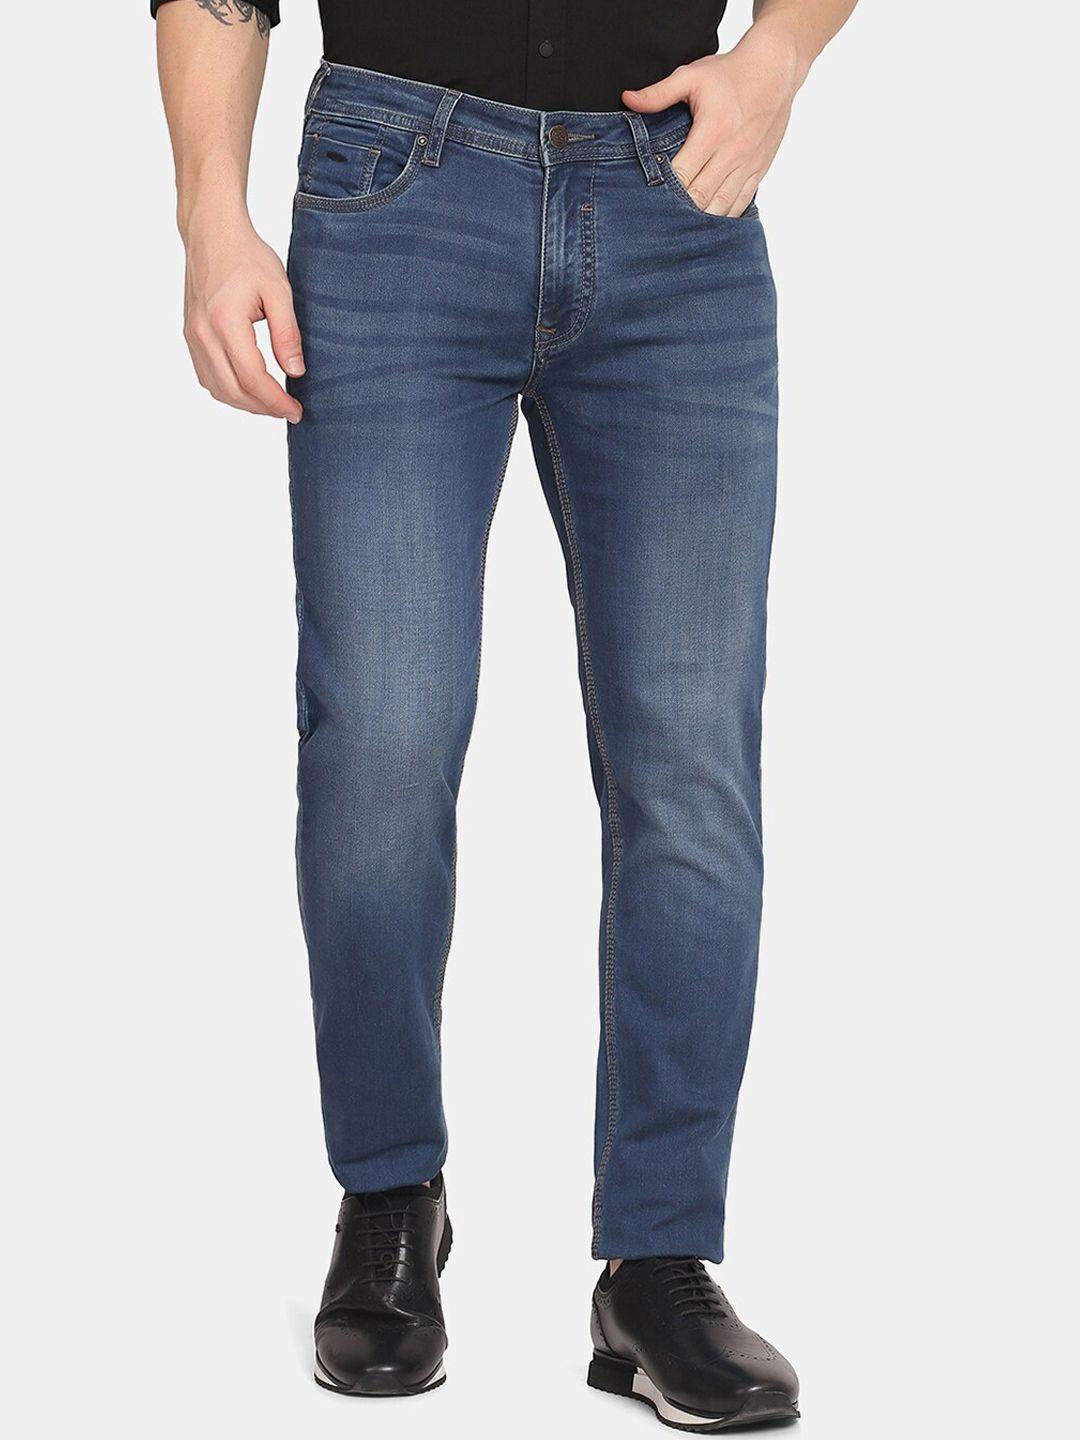 blackberrys-men-blue-slim-fit-low-rise-light-fade-jeans